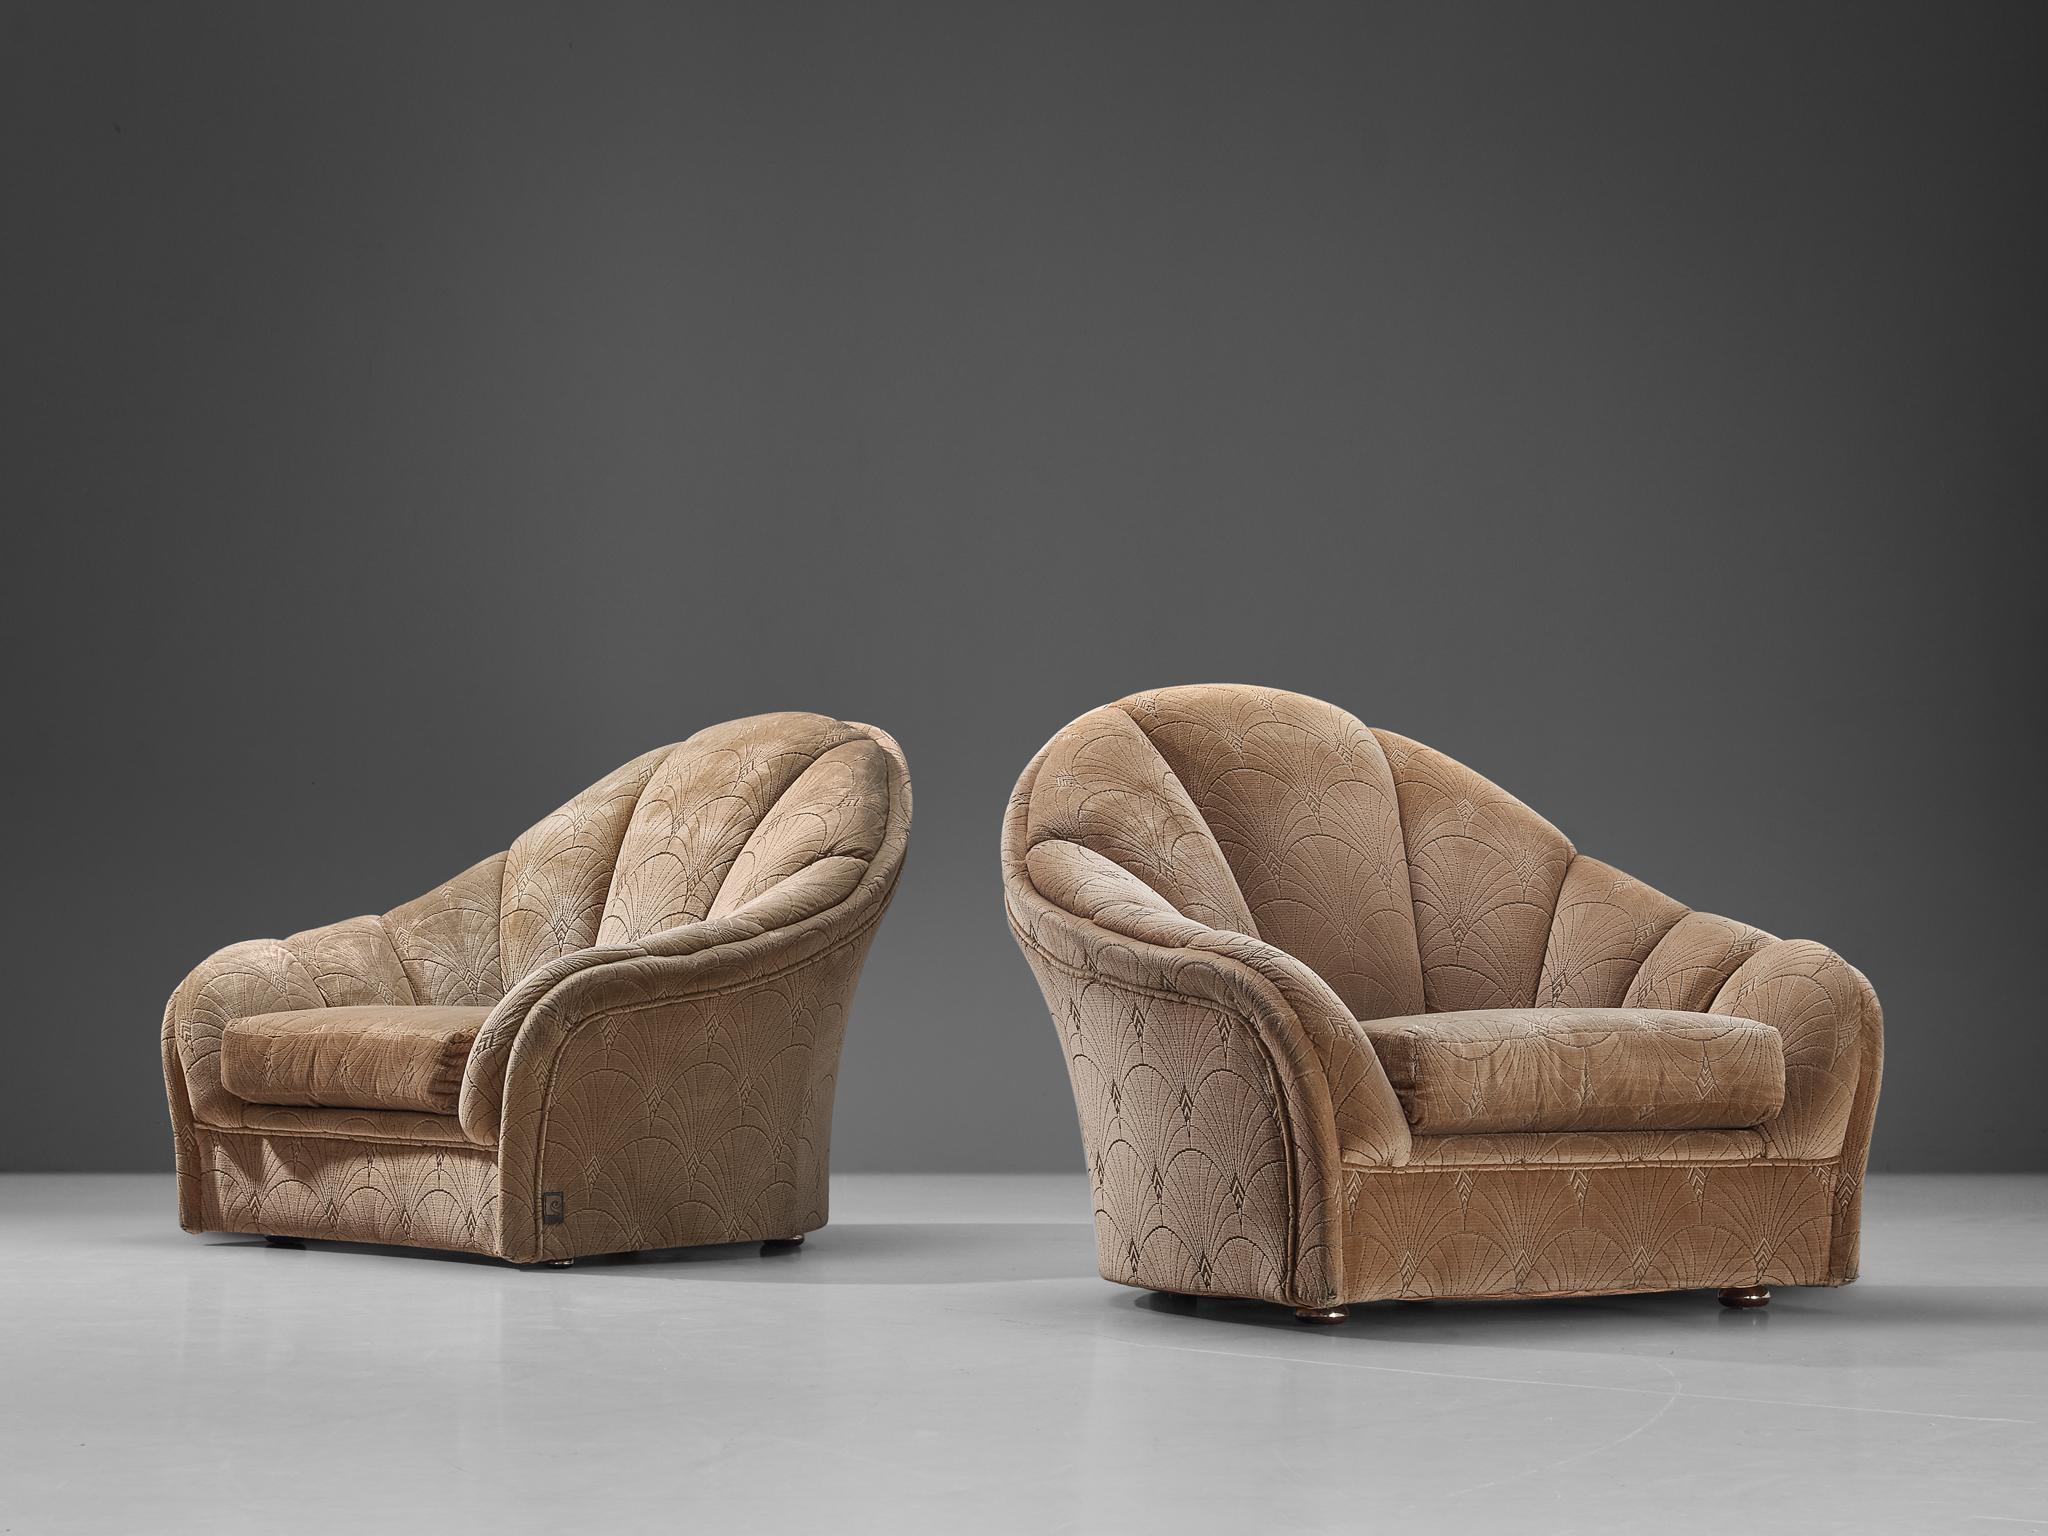 Pierre Cardin, Paar Sessel, beiger Samt, Kunststoff, Chrom, Frankreich, 1970er Jahre 

Dieses Paar Loungesessel wurde von dem bahnbrechenden Modedesigner Pierre Cardin (1922 - 2020) entworfen. Pierre Cardin war ein weltberühmter Modedesigner, der